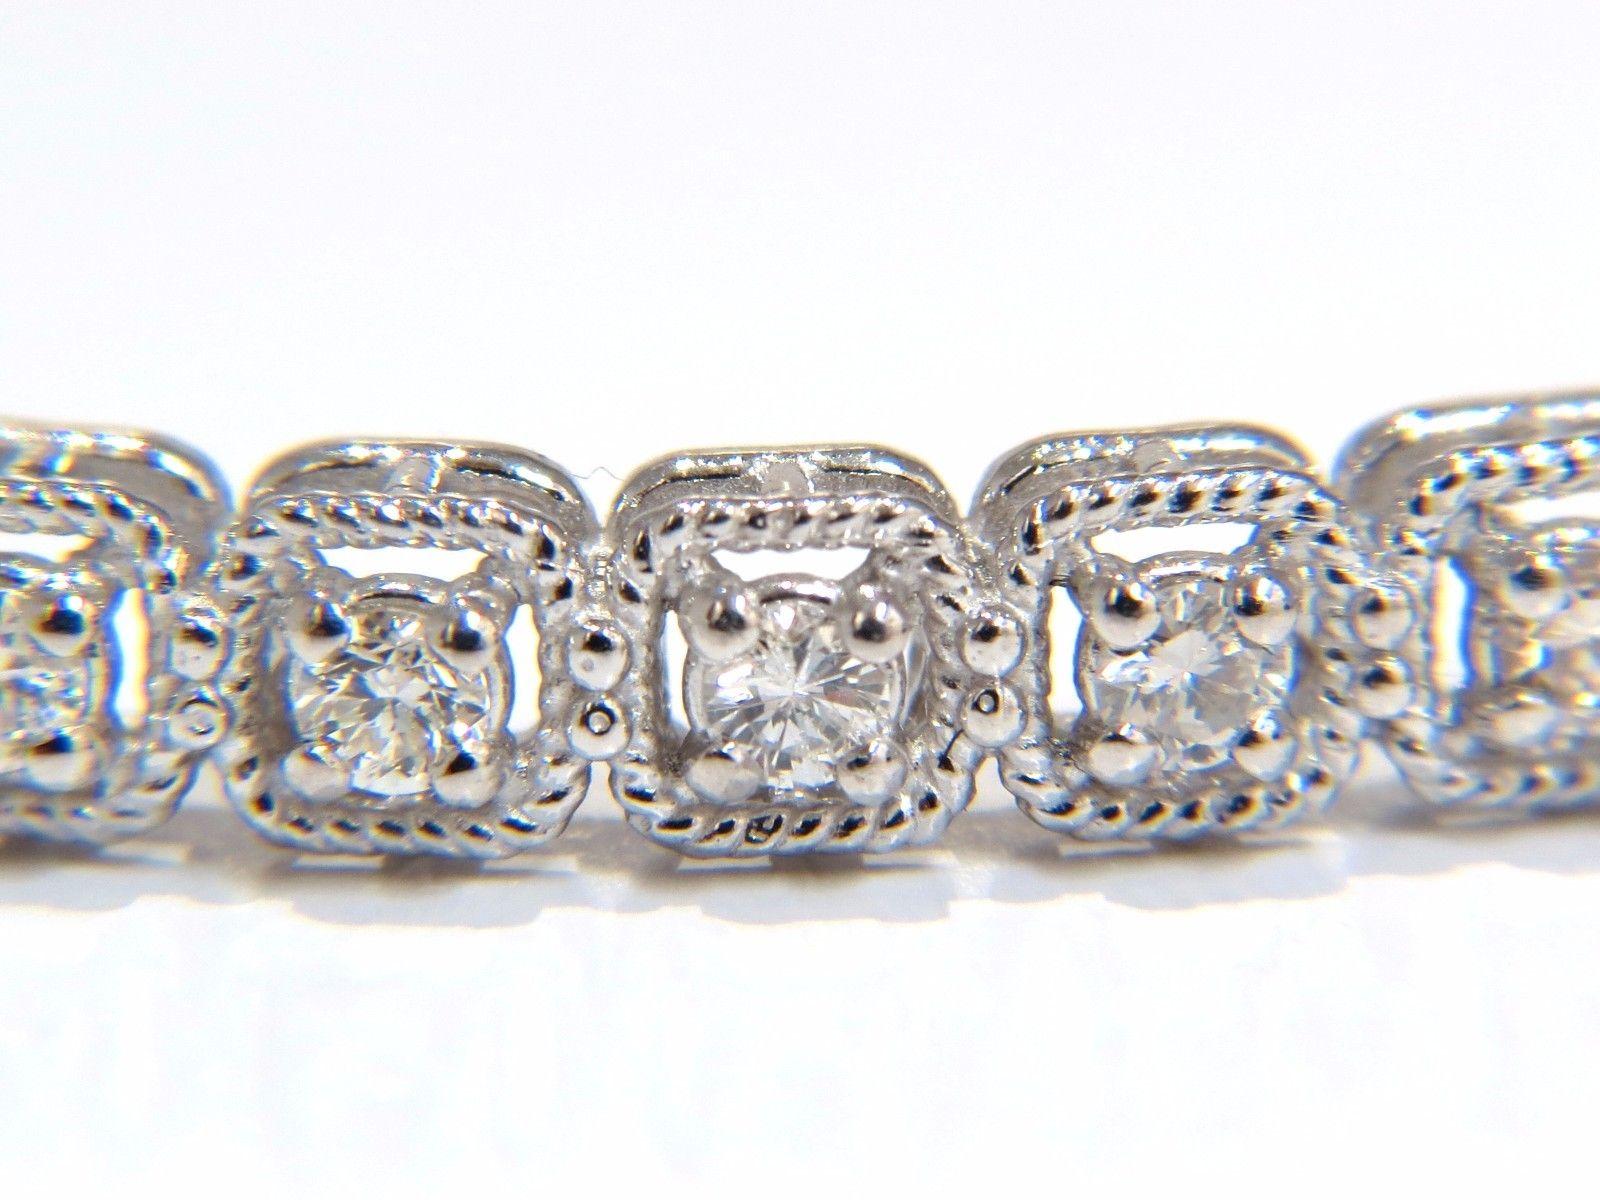 .90ct diamants naturels bracelet bangle

Forme de torsion en corde carrée entourant chaque diamant

Rounds & Full cut.

Couleur H et clarté Si-1.

or blanc 14kt 


11 grammes.

4.6mm de large

6.5 pouces (longueur portable)

Verrouillage sécurisé,